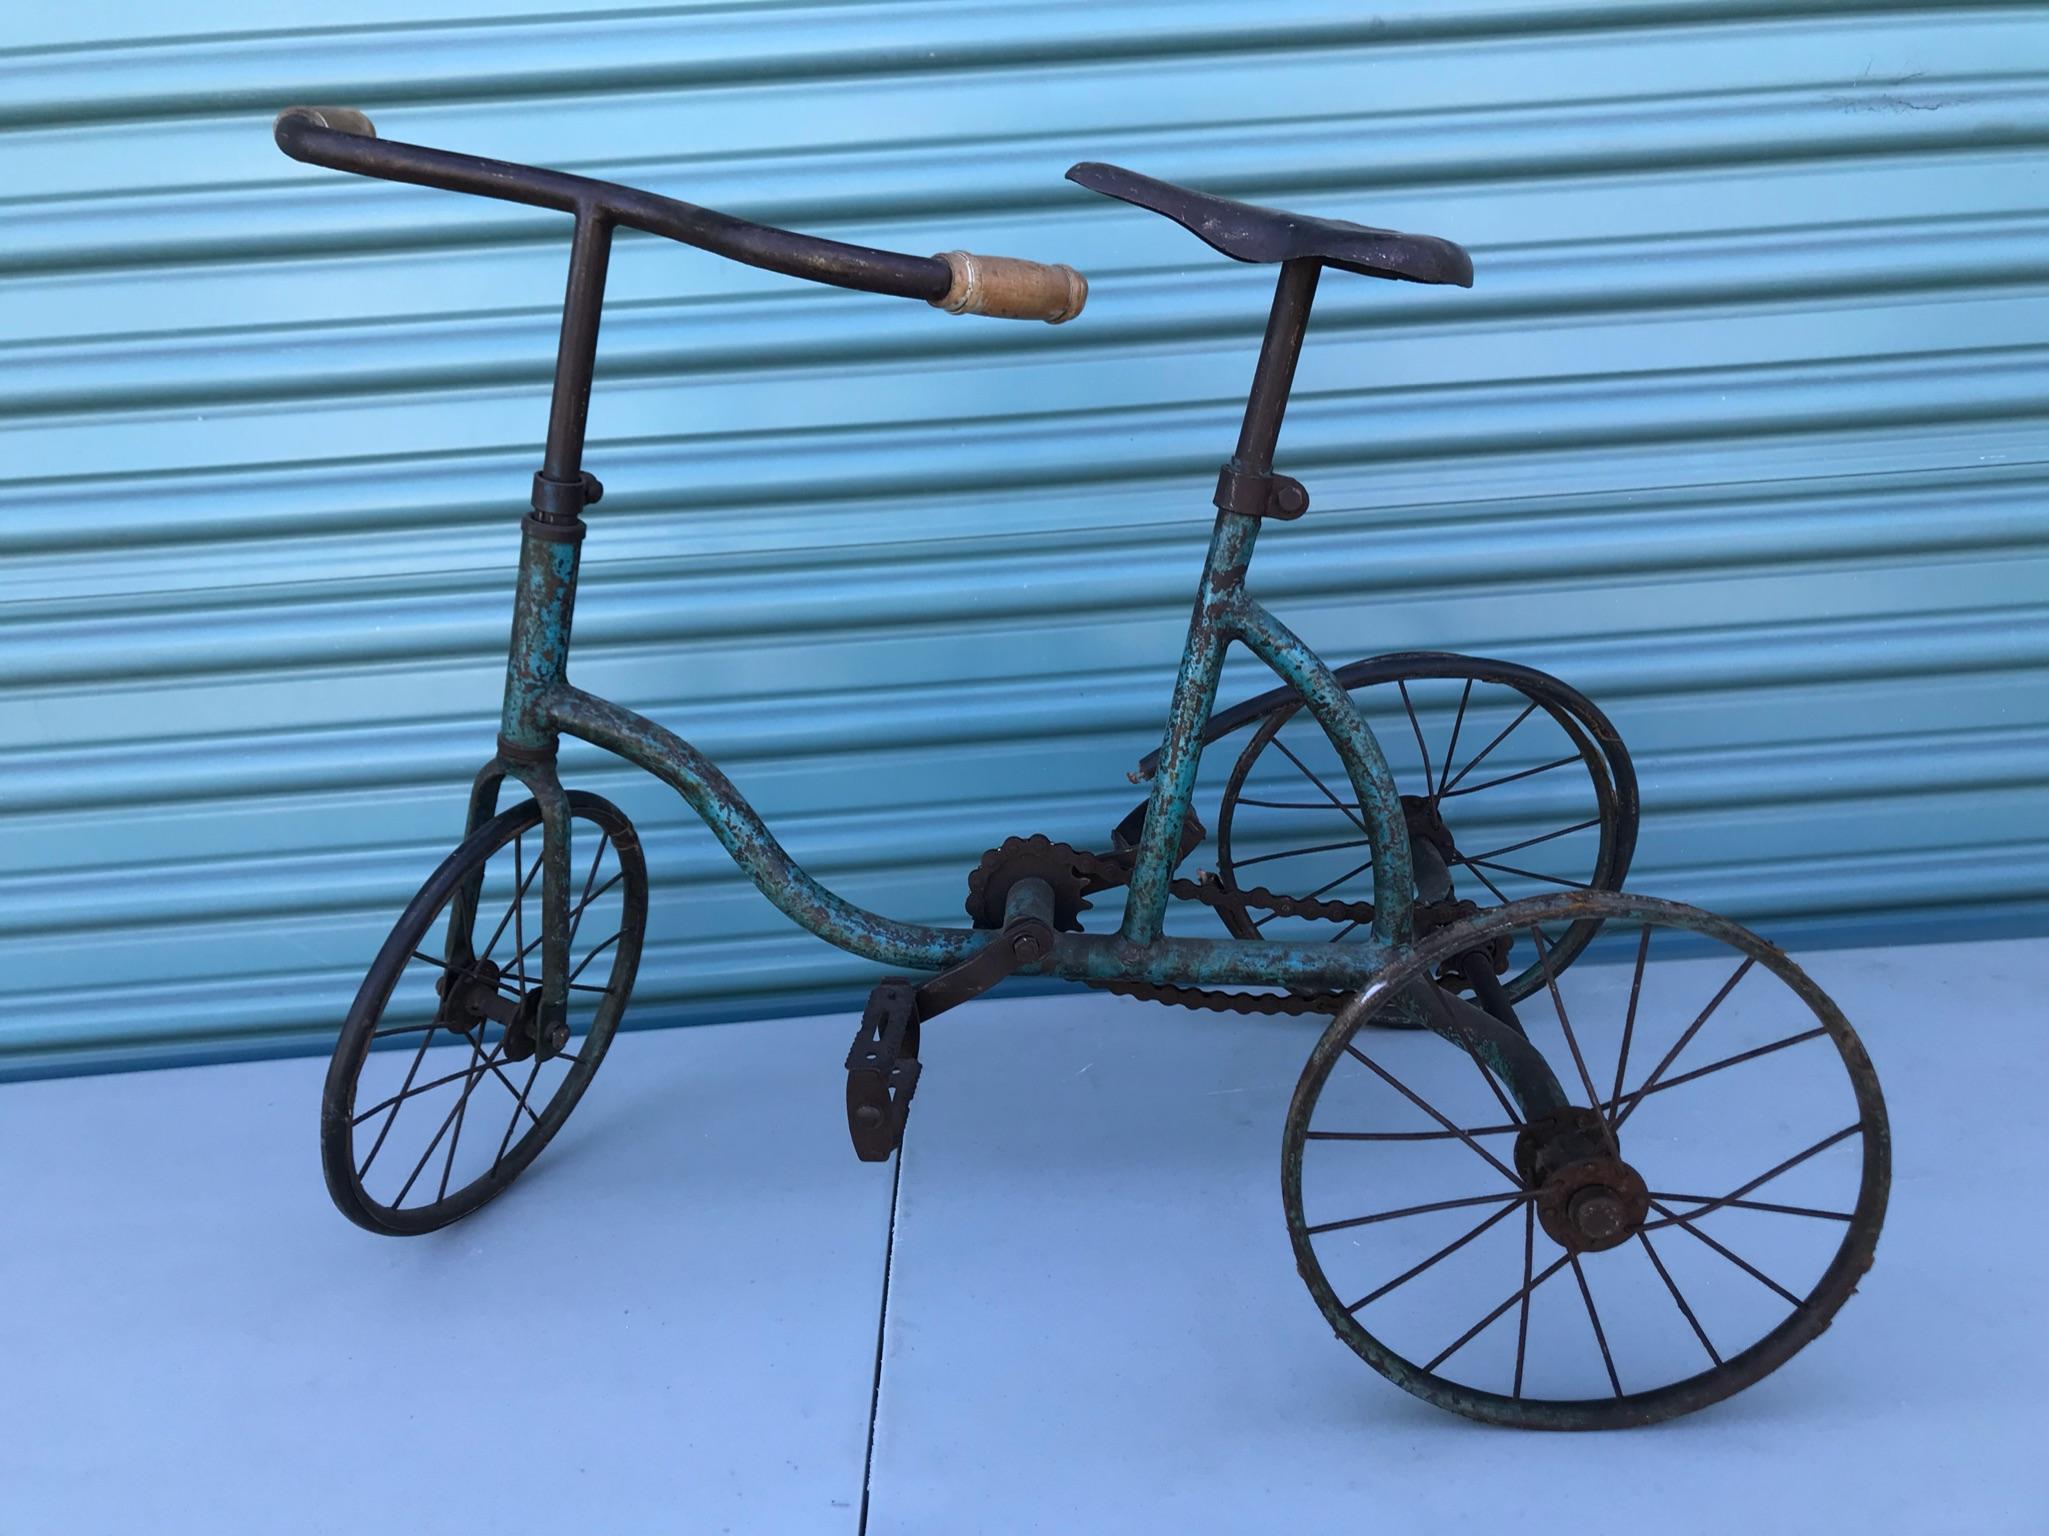 Vintage tricycle.